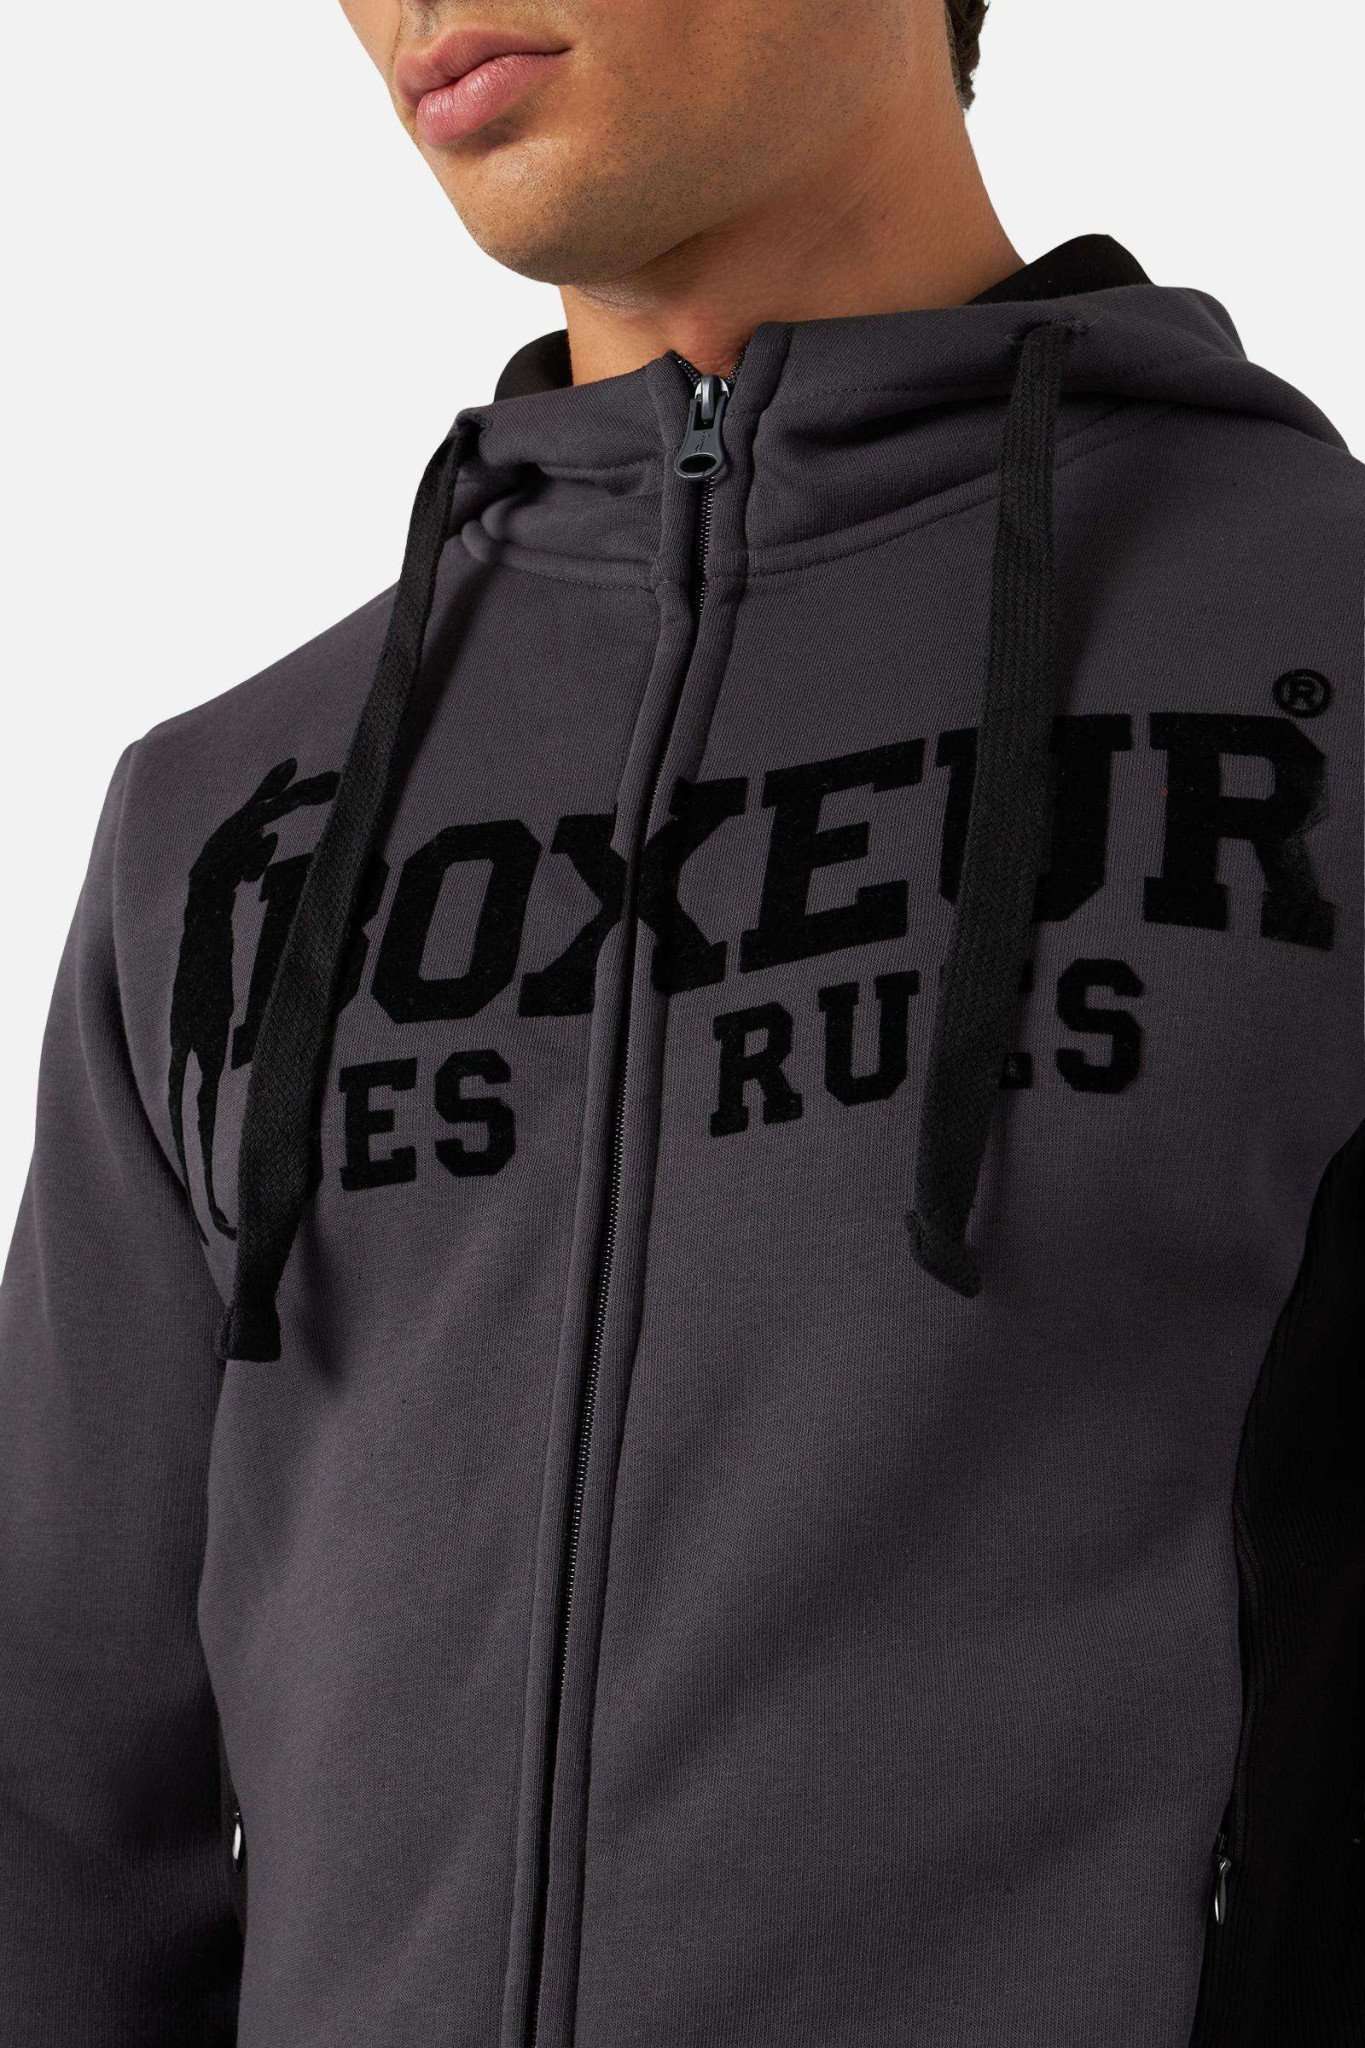 Hooded Full Zip Sweatshirt in Anthracite Sweatjacken Boxeur des Rues   